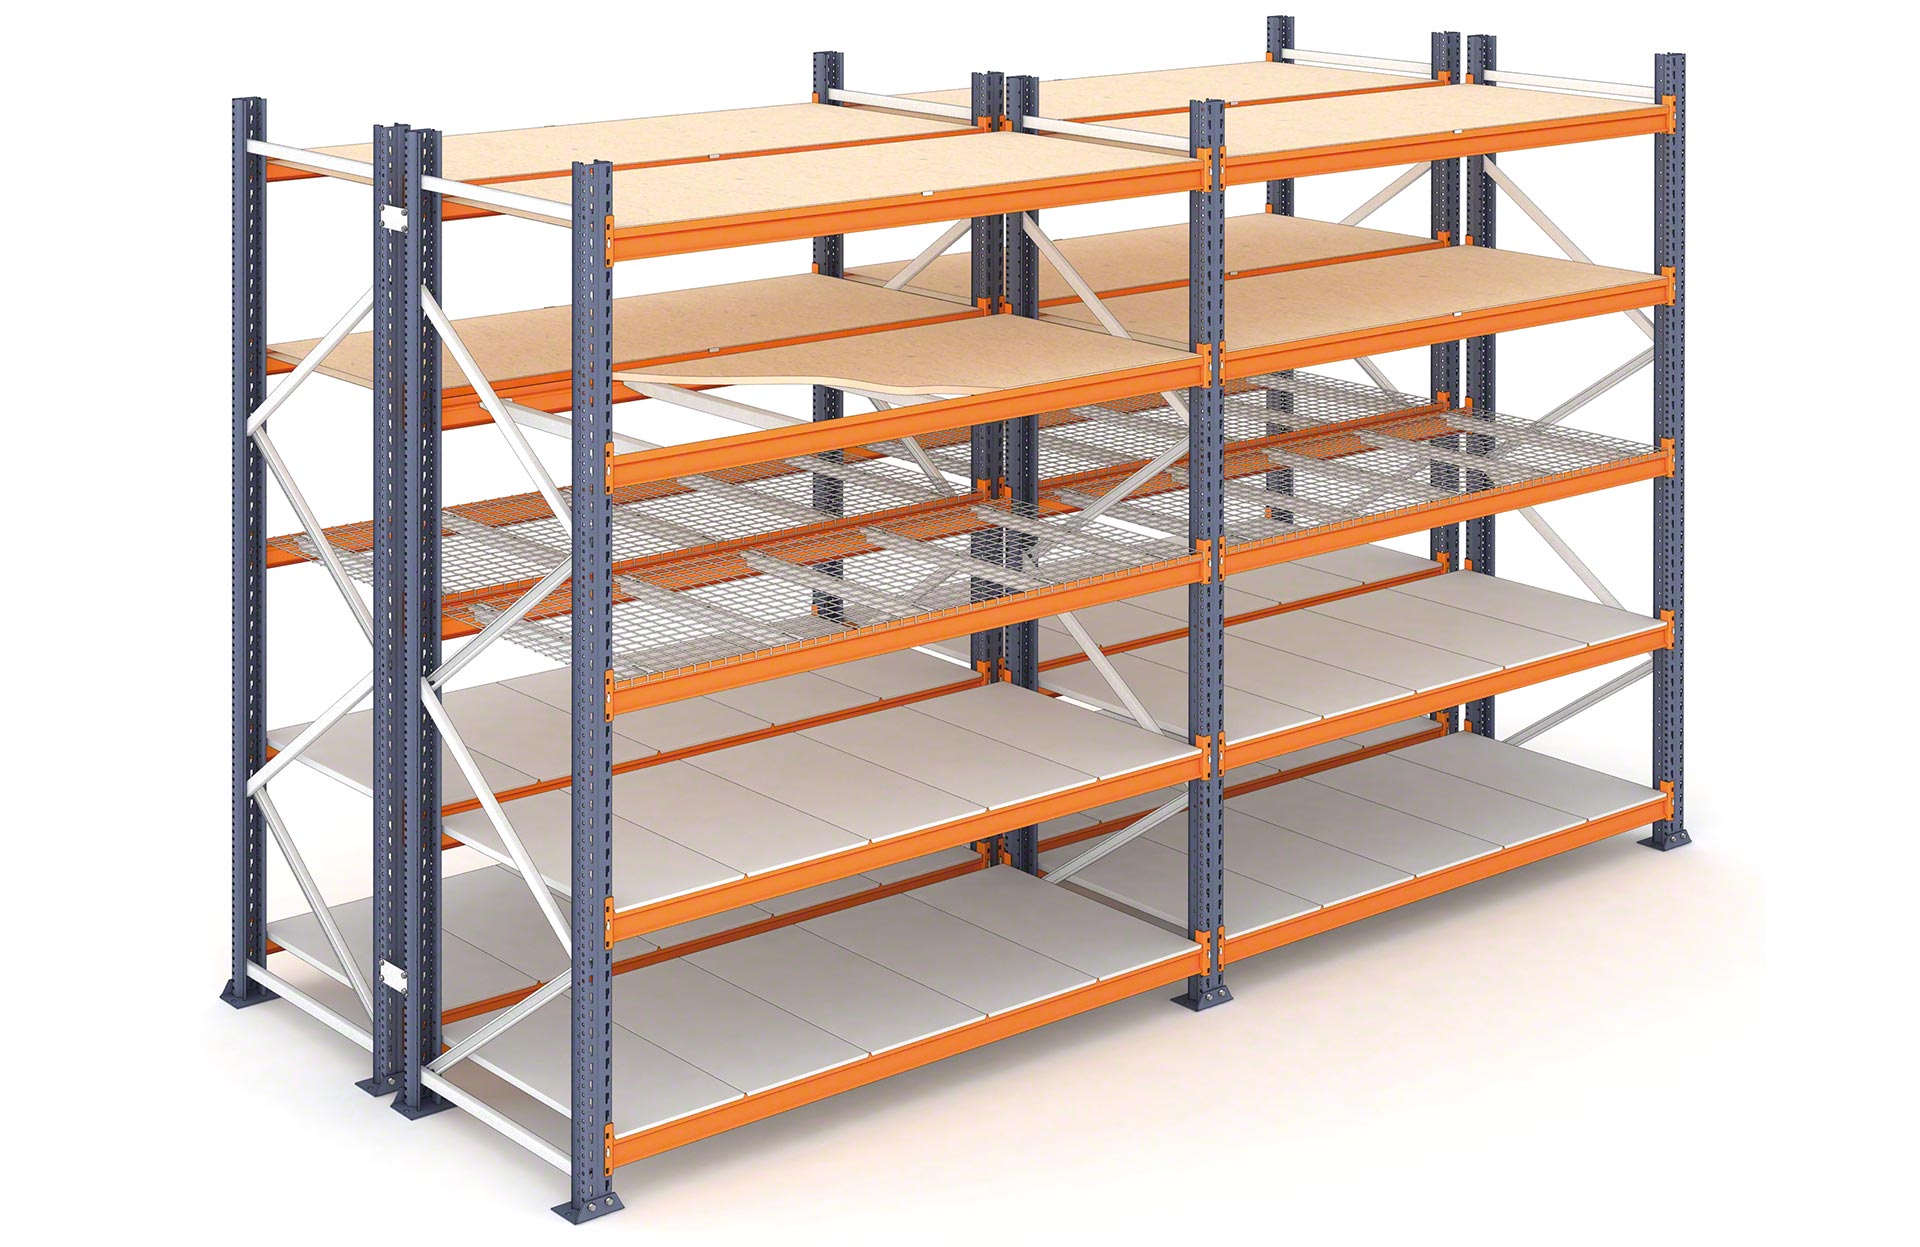 Las estanterías de carga pesada y carga media M7 pueden equiparse con distintos tipos de estantes